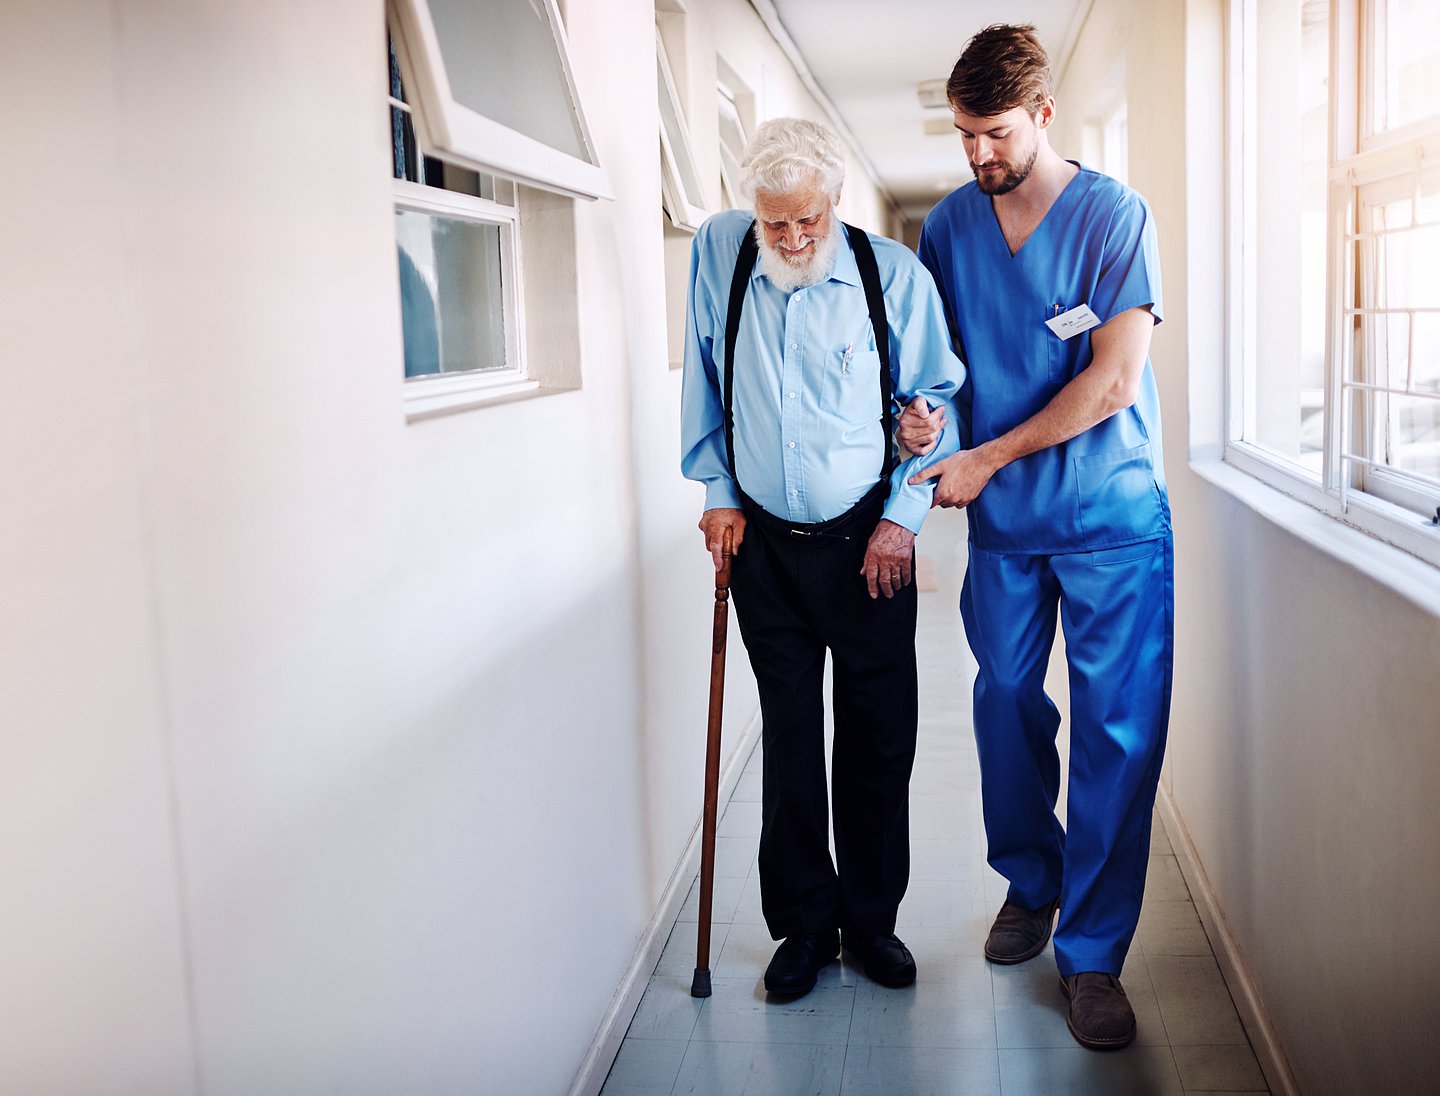 Schmuckbild zeigt eine Pflegekraft, die einen älteren Mann beim Gehen unterstützt.